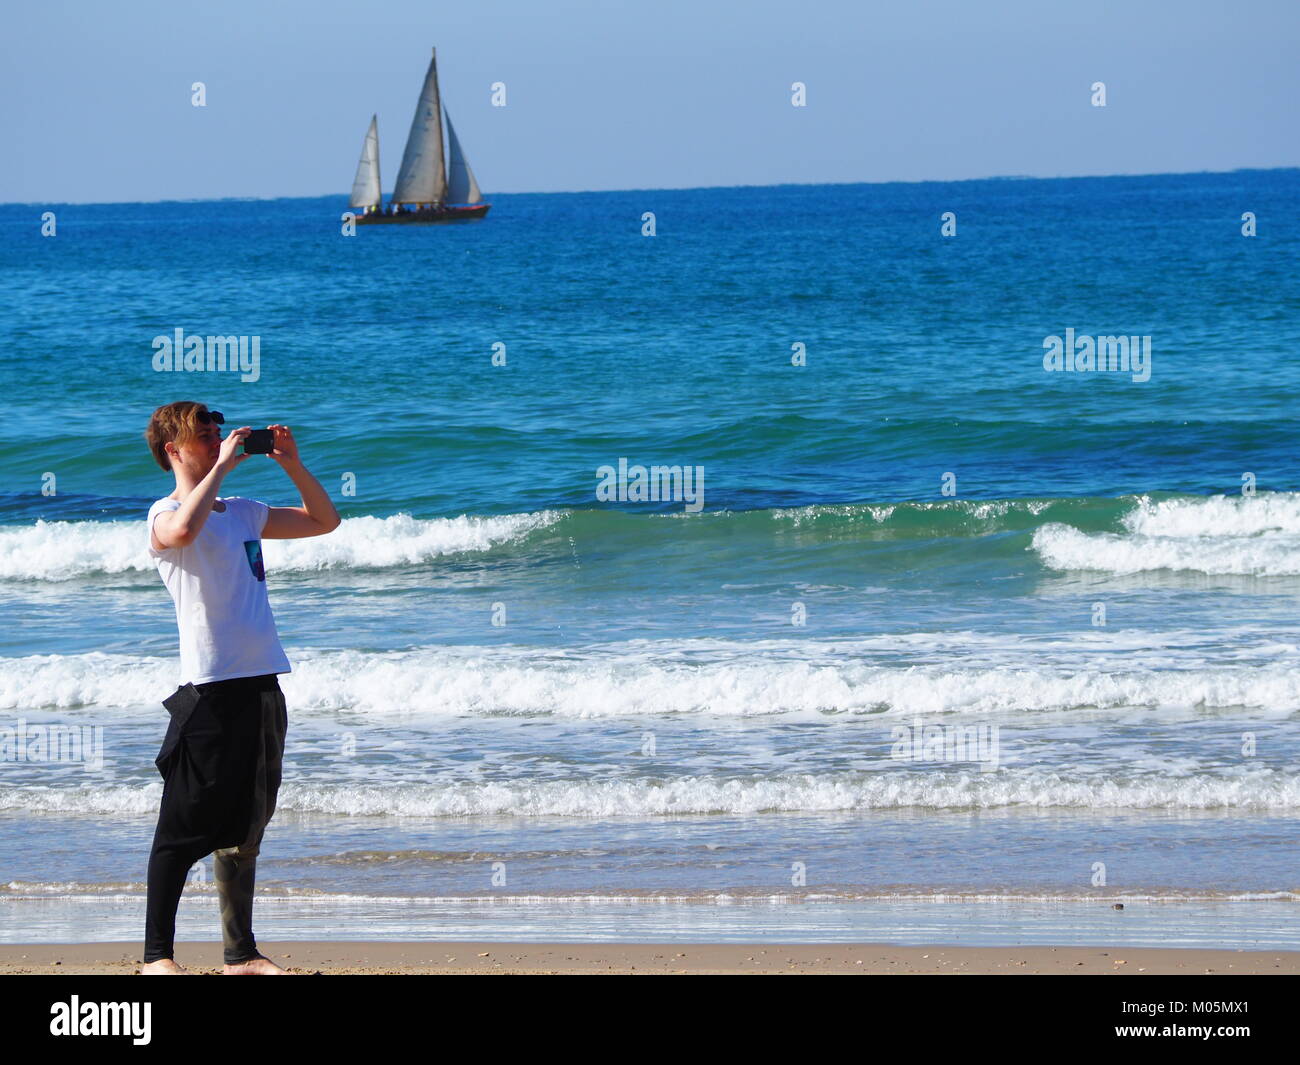 Erholung im Urlaub - ein Kerl ist, selfie Bild mit Segel Boot beim Stehen auf dem Strand Stockfoto